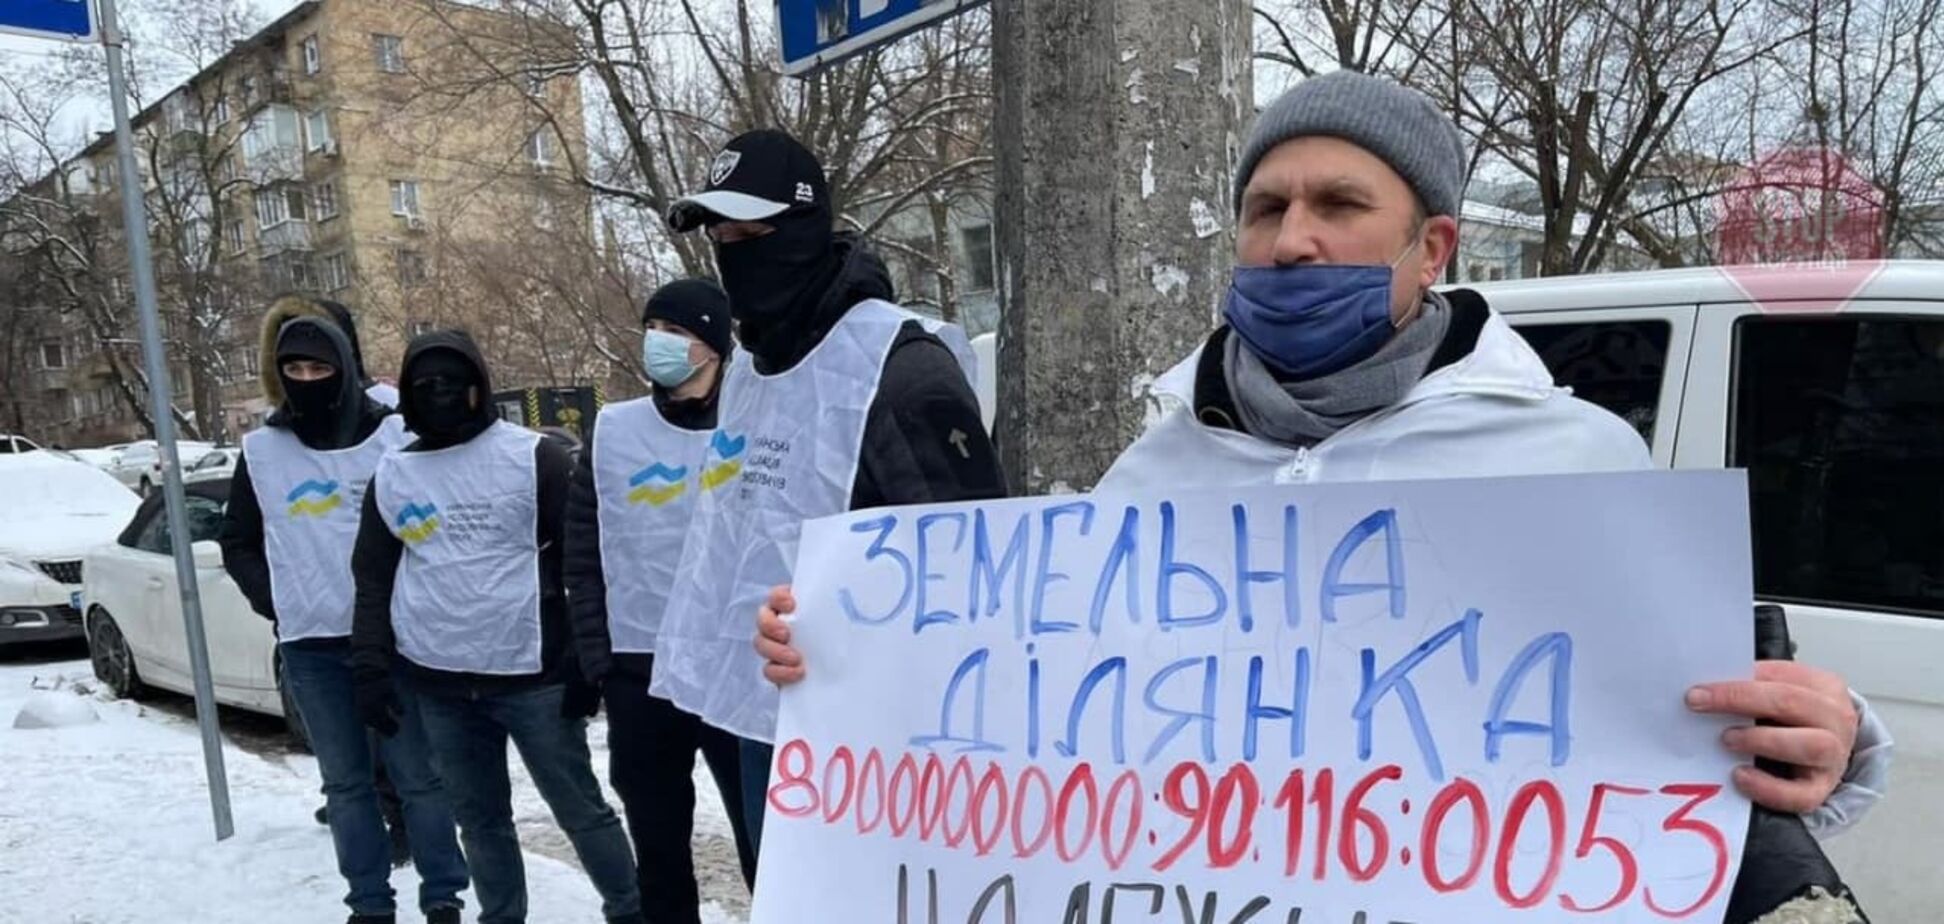 В Киеве ряд общественных организаций вышли на протест: требуют вернуть общине земельный участок